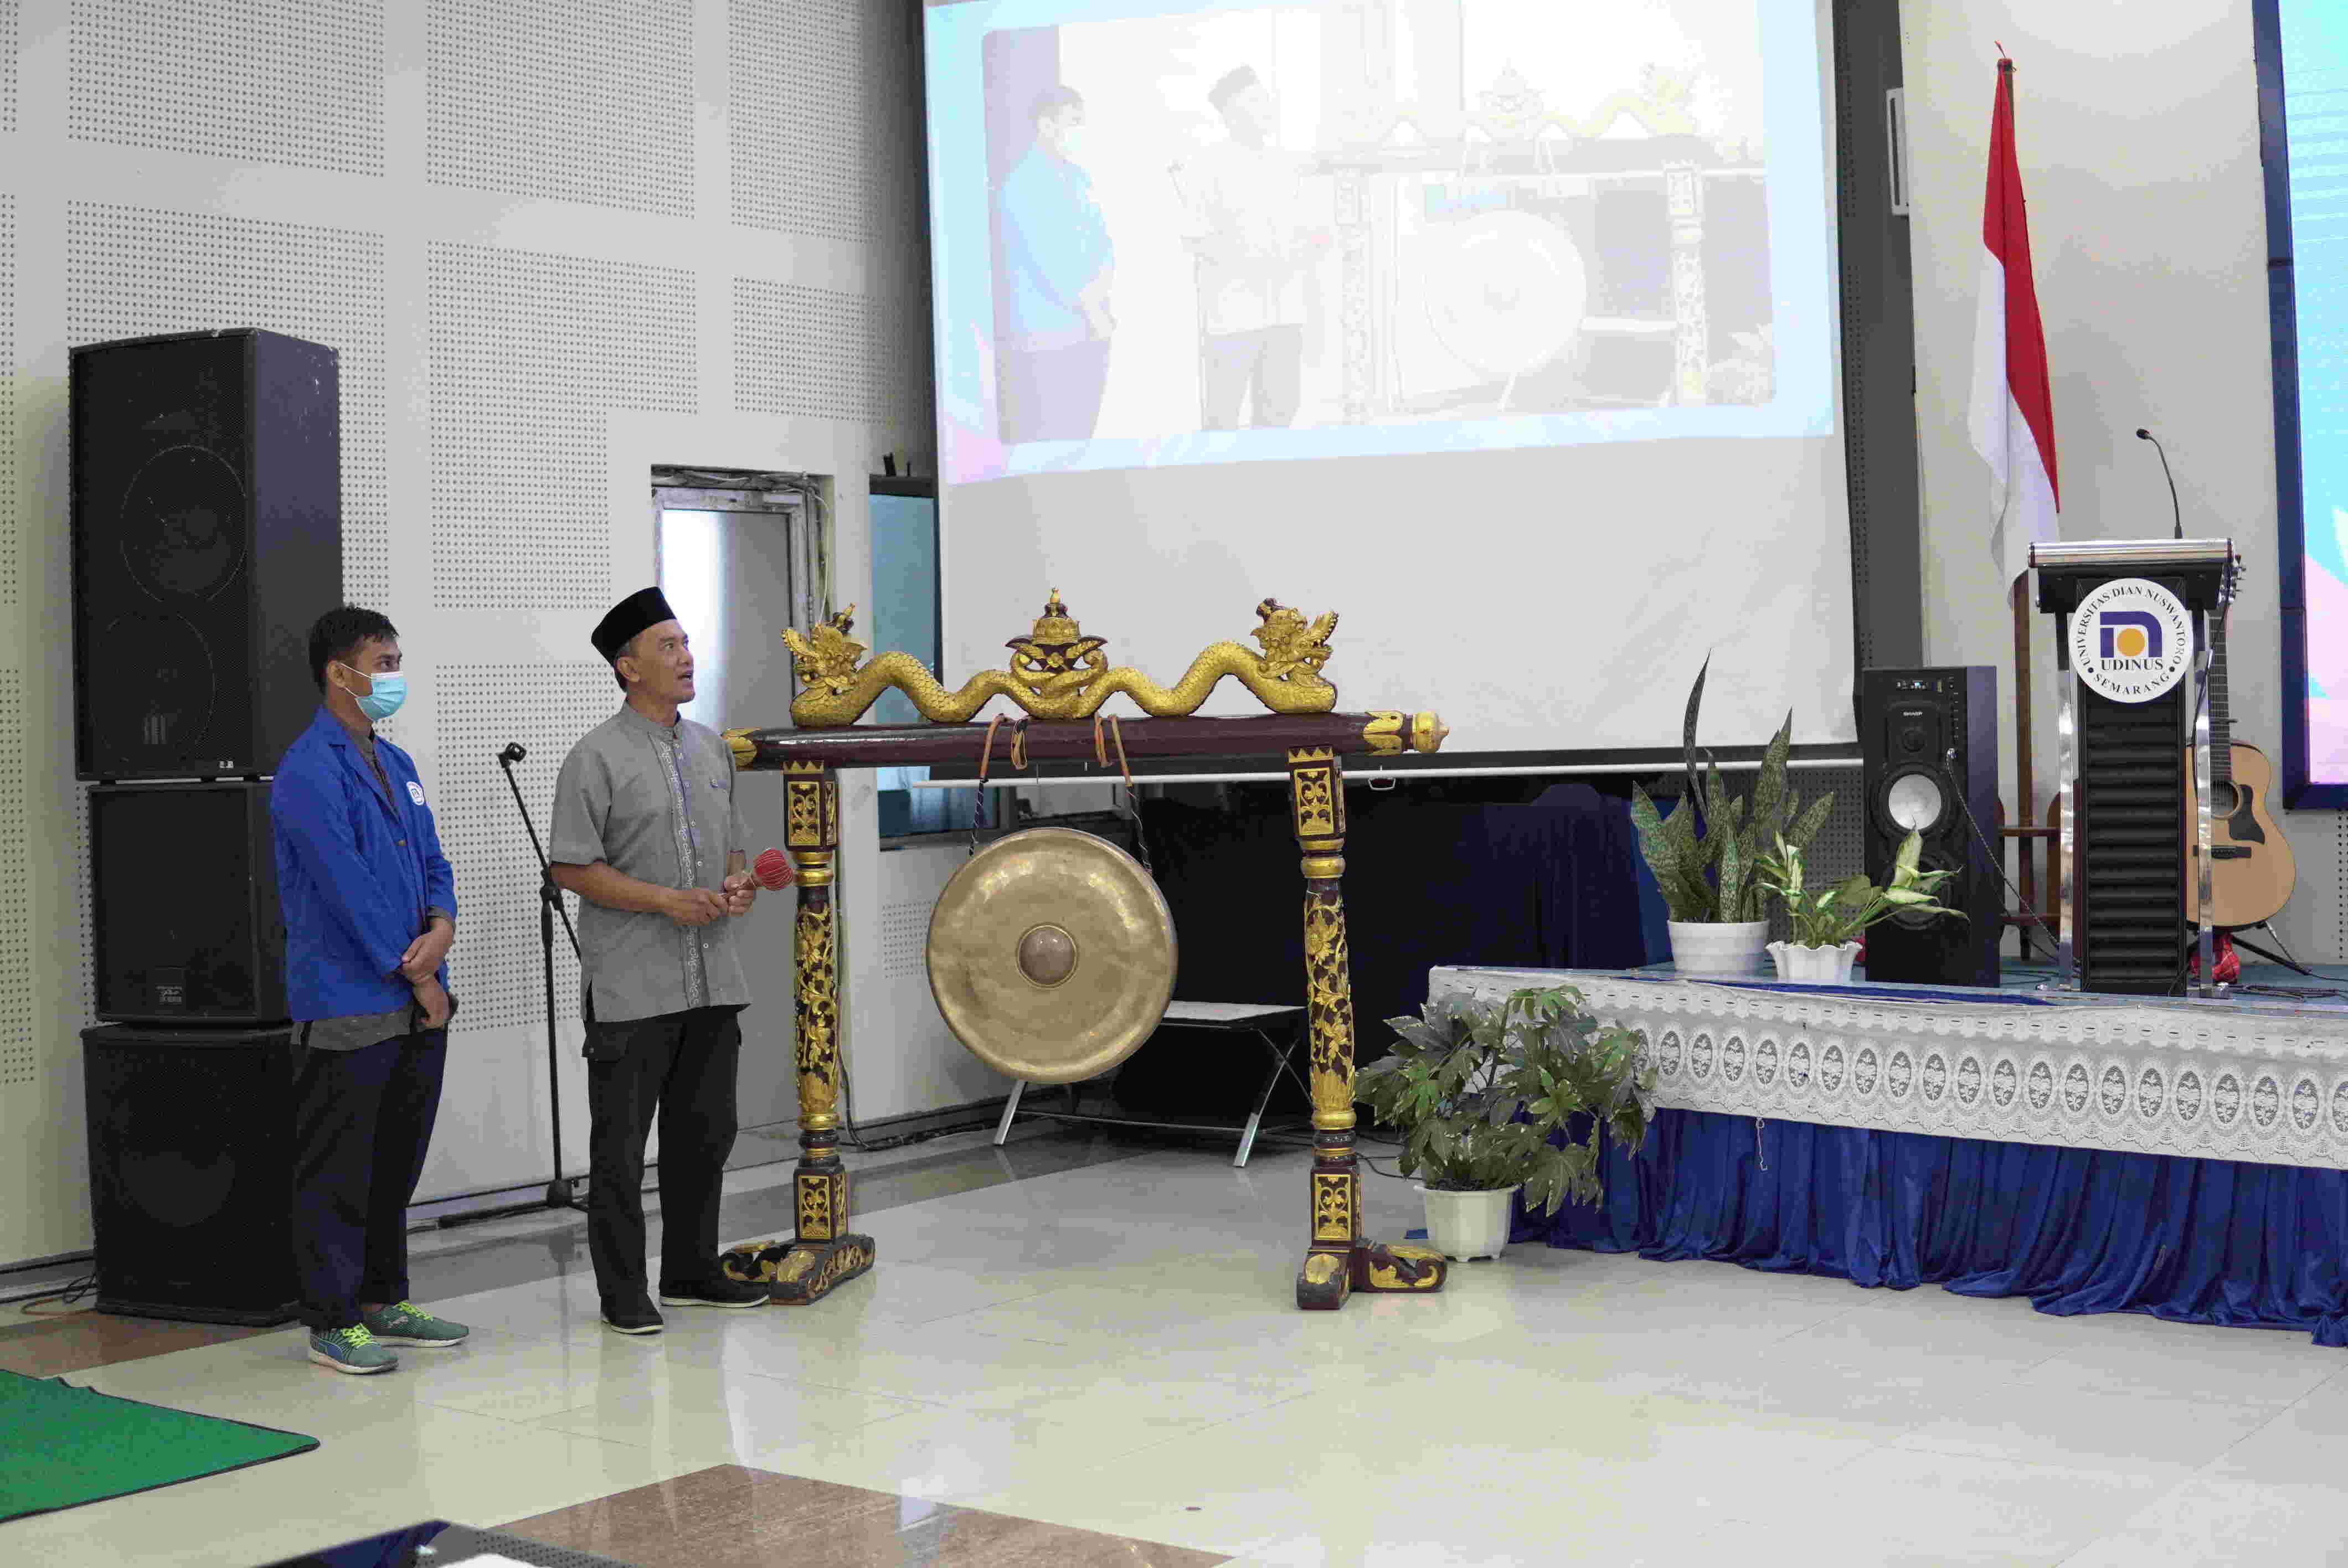 Sambutan Rektor dengan diwakilkan oleh Bapak Edy Mulyanto S.Si, M.Kom serta Pembukaan Acara Rapimda 1